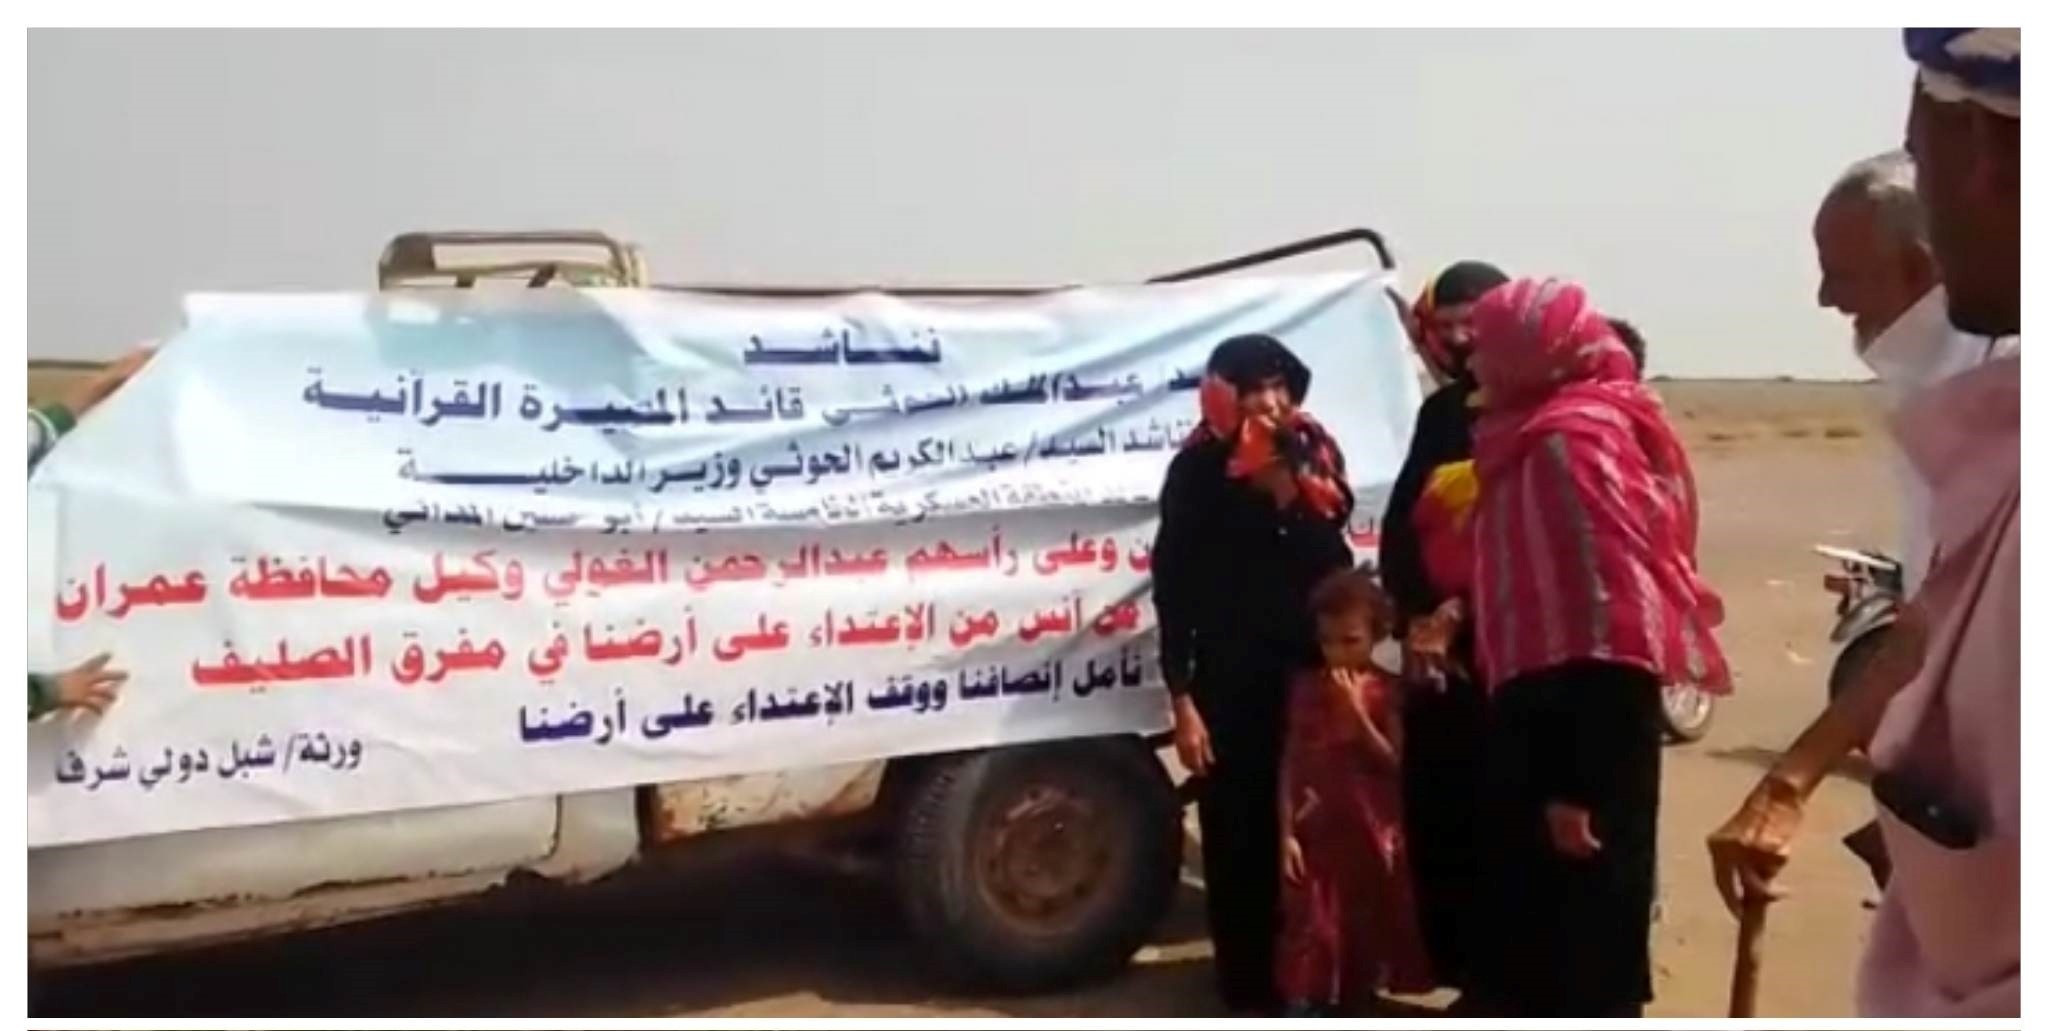 قيادات حوثية من عمران وذمار تنهب بالقوة أراضي تابعة لمواطنين في محافظة الحديدة